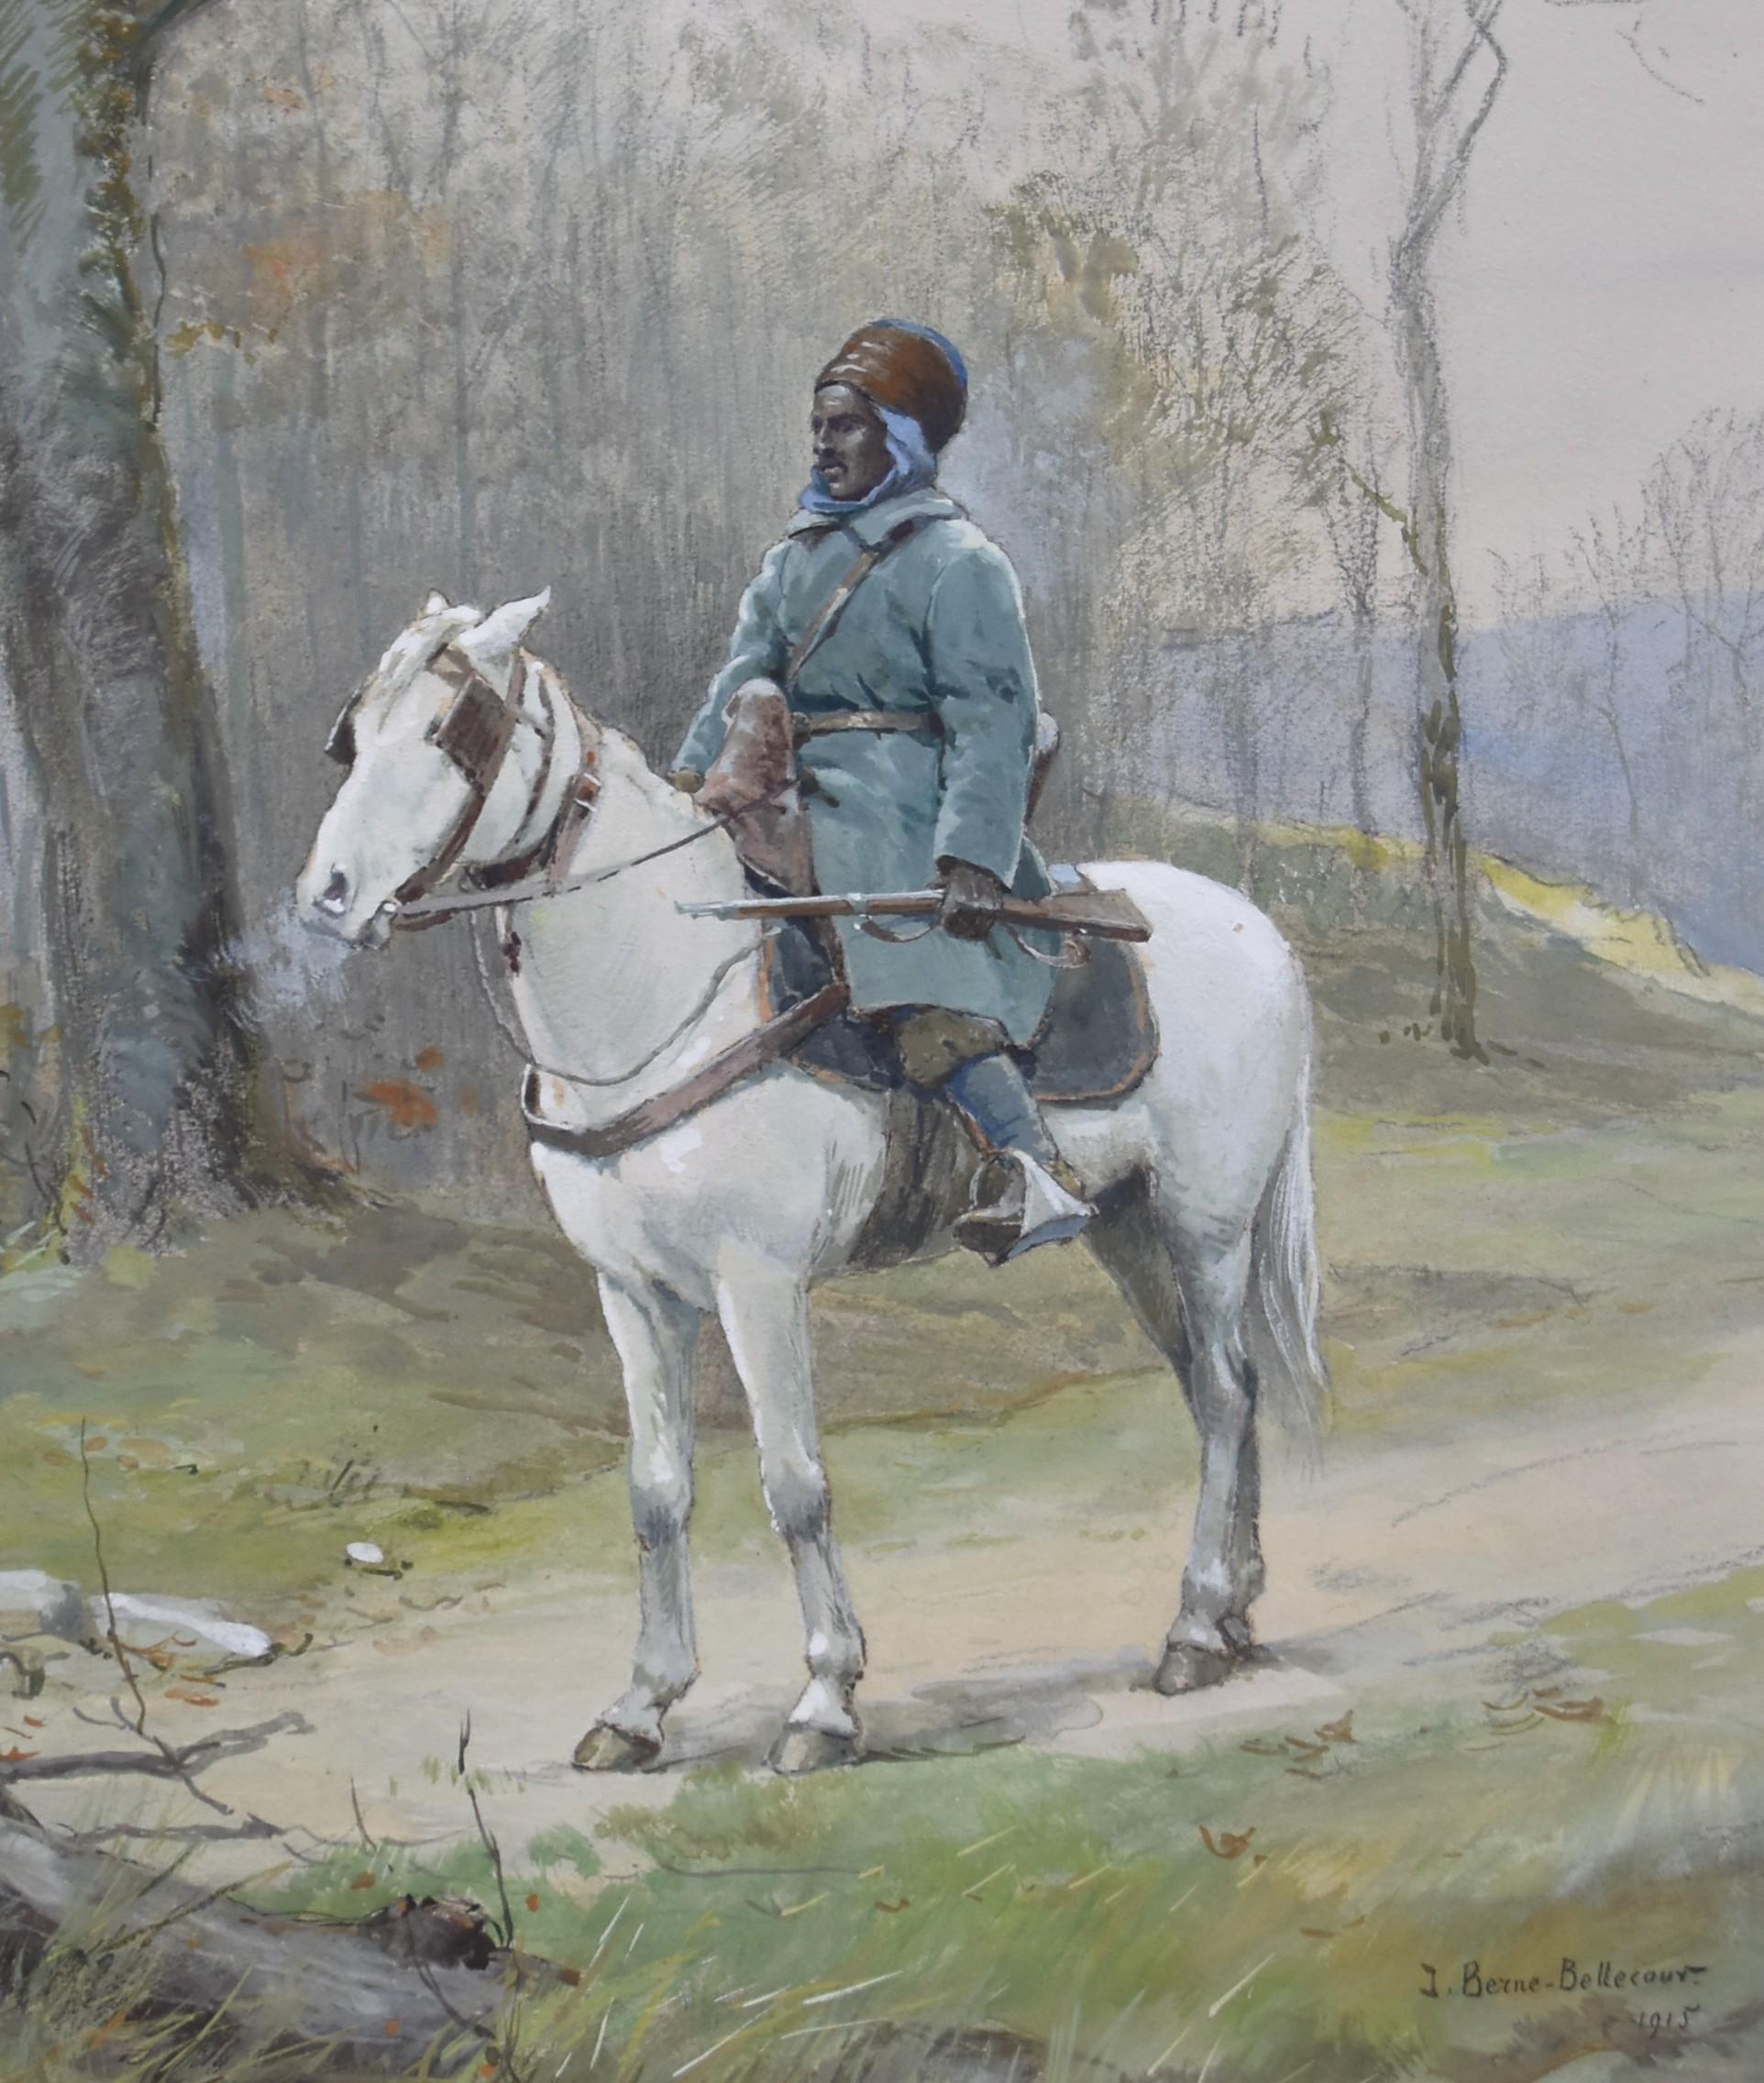 J.Jacques Berne-Bellecour (1874-1939), North African Horseman, 1915, watercolor - Academic Art by Jean-Jacques Berne-Bellecour